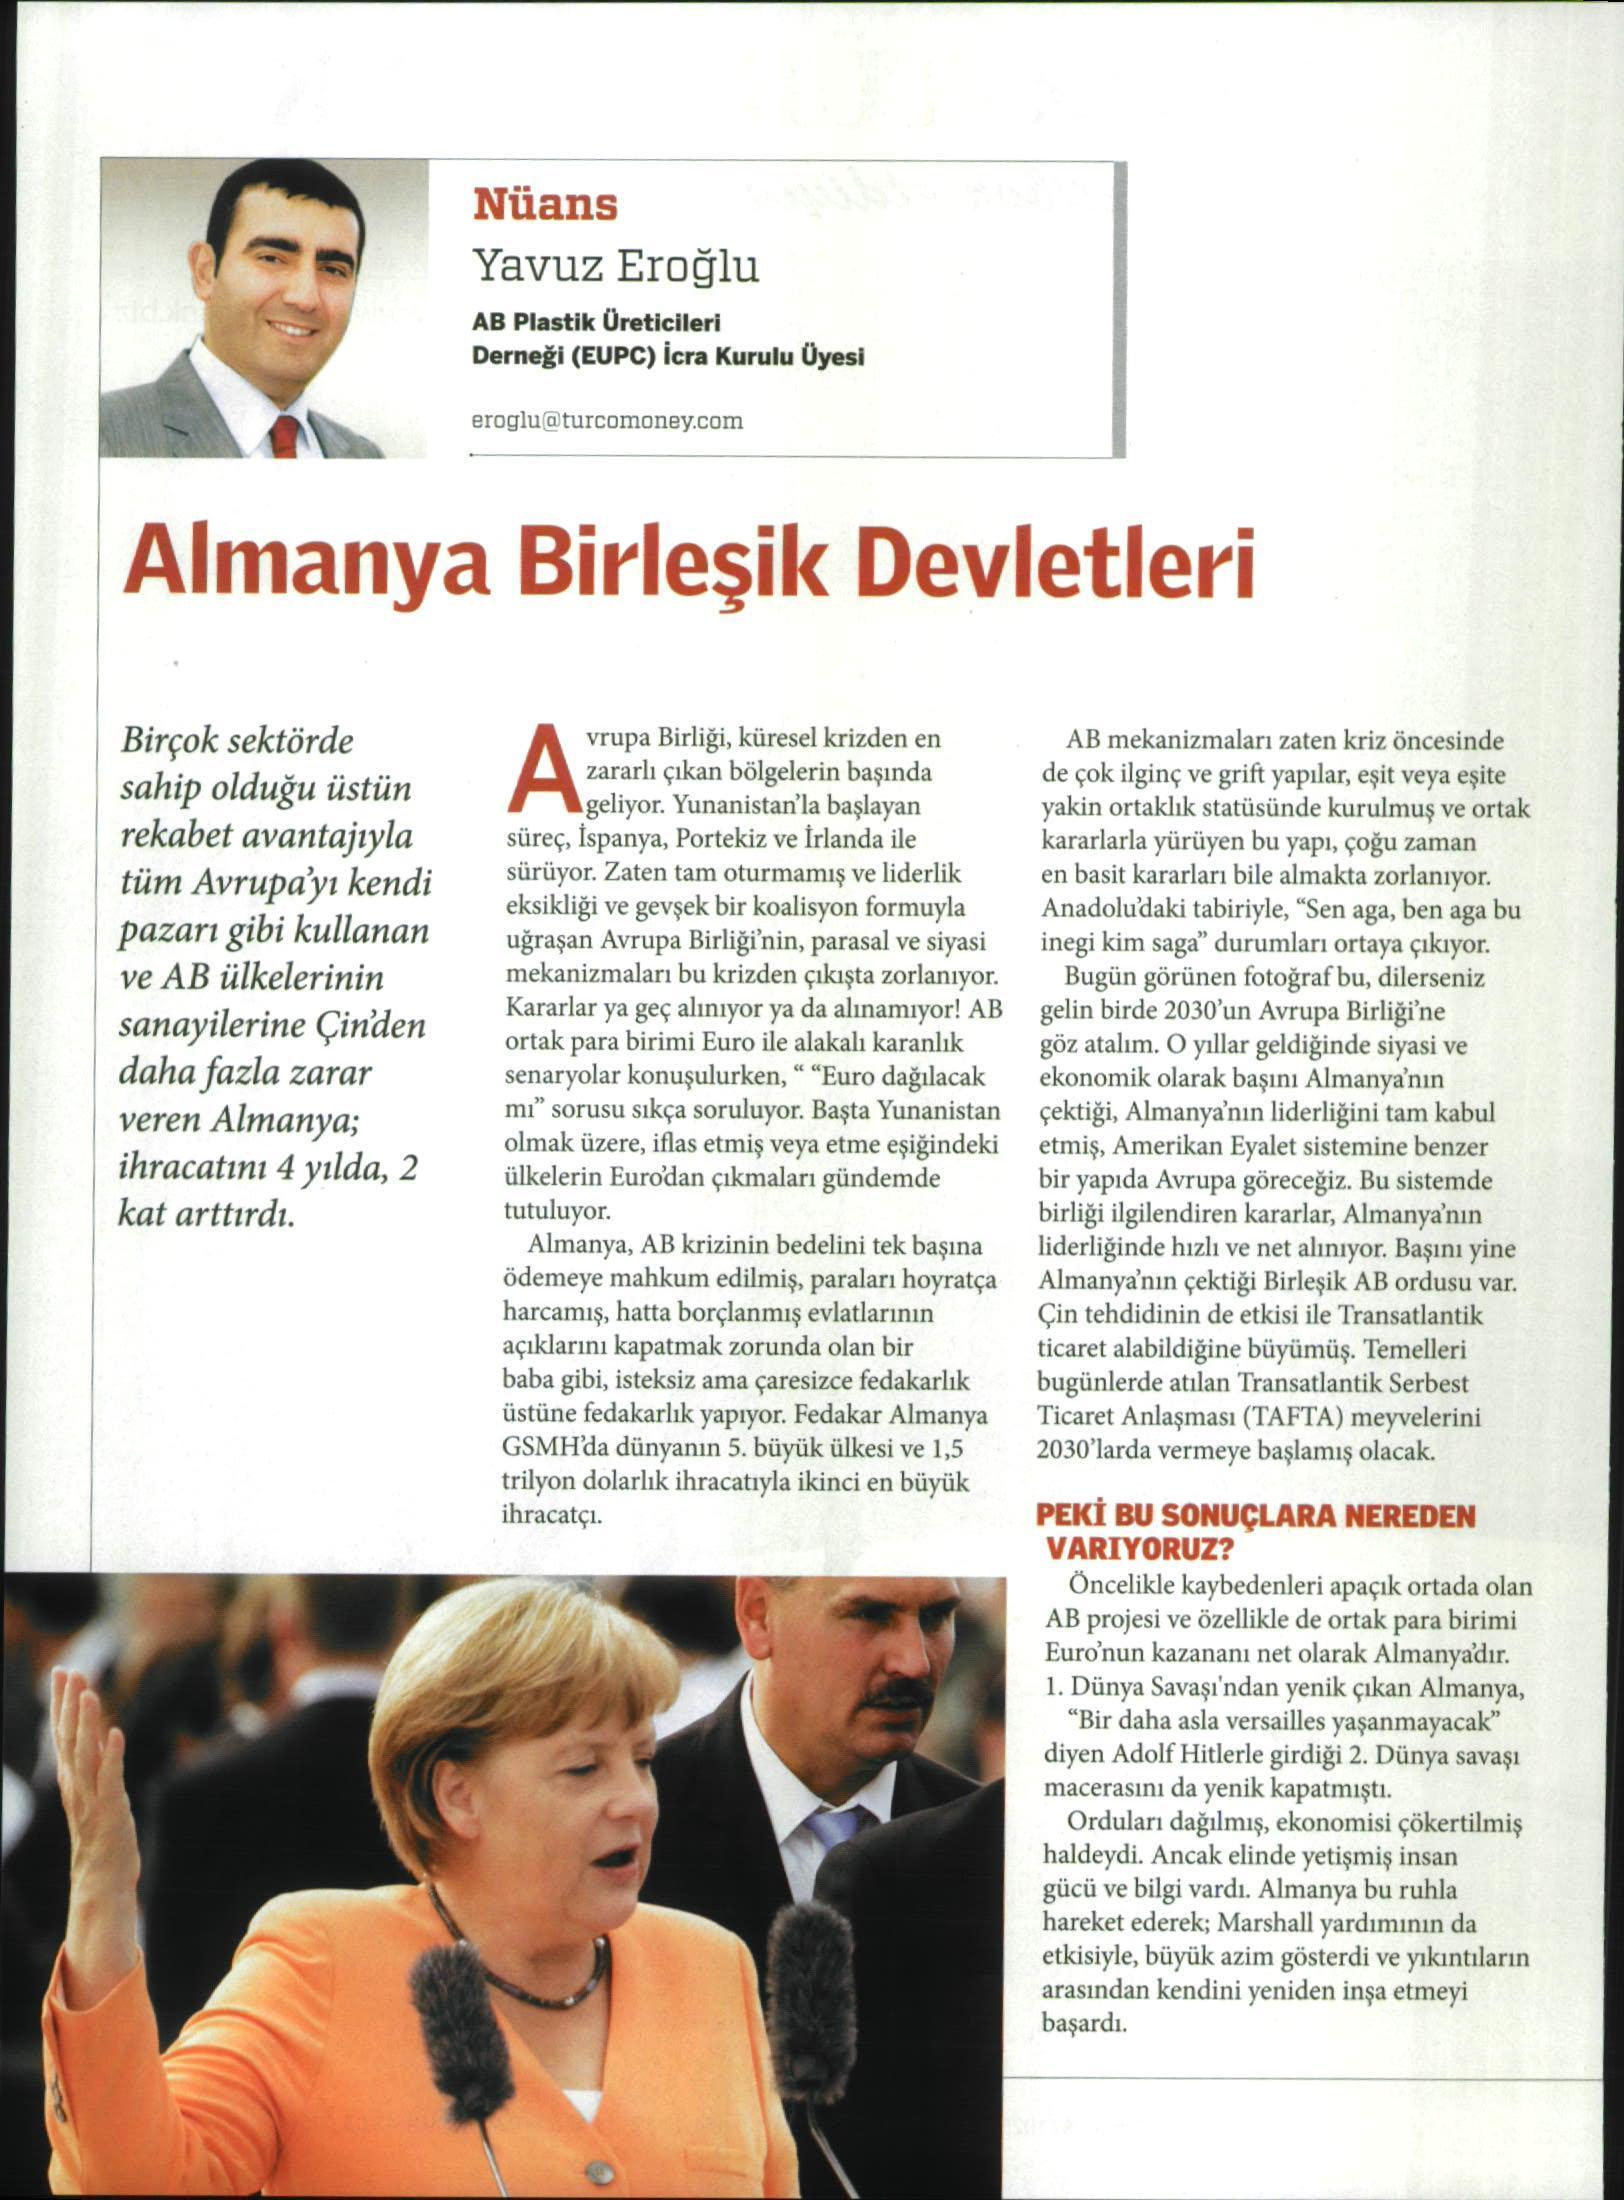 Yavuz EROĞLU'nun haftalık ekonomi dergisi TURCOMONEY'deki ‘Nüans’ kösesindeki bu ayki yazısı ‘Almanya Birleşik Devletleri’